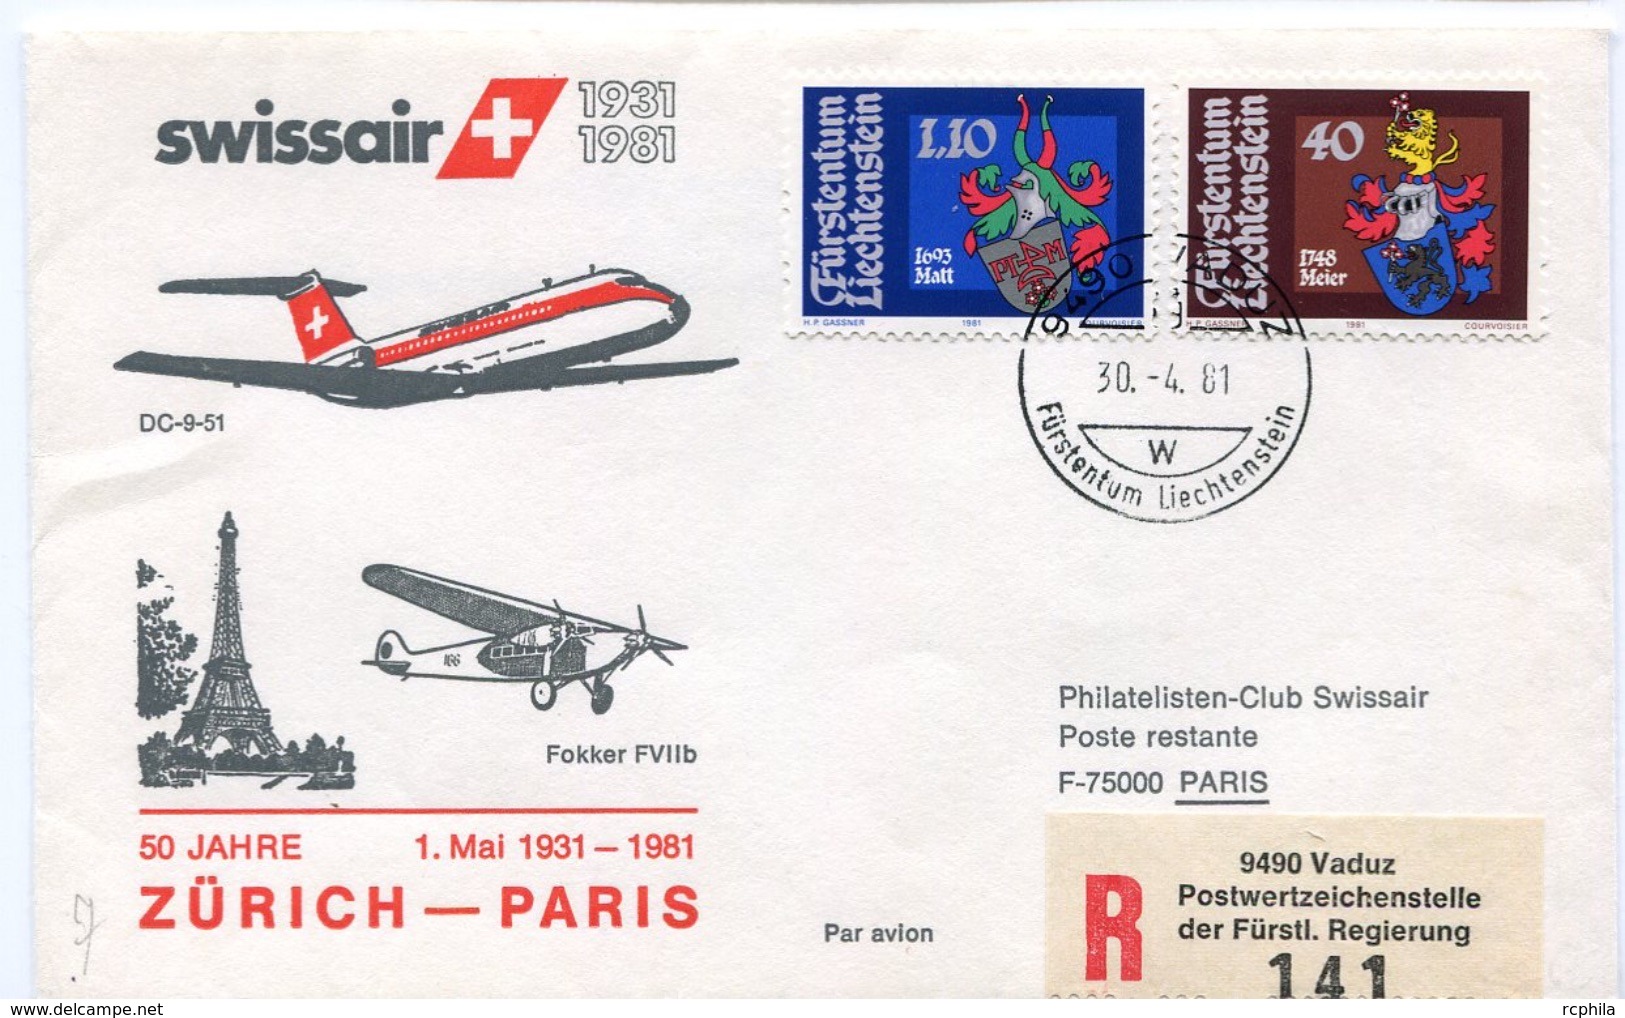 RC 6561 SUISSE SWITZERLAND 1981 1er VOL SWISSAIR ZURICH - PARIS FRANCE LIECHTENSTEIN FFC LETTRE COVER - Erst- U. Sonderflugbriefe